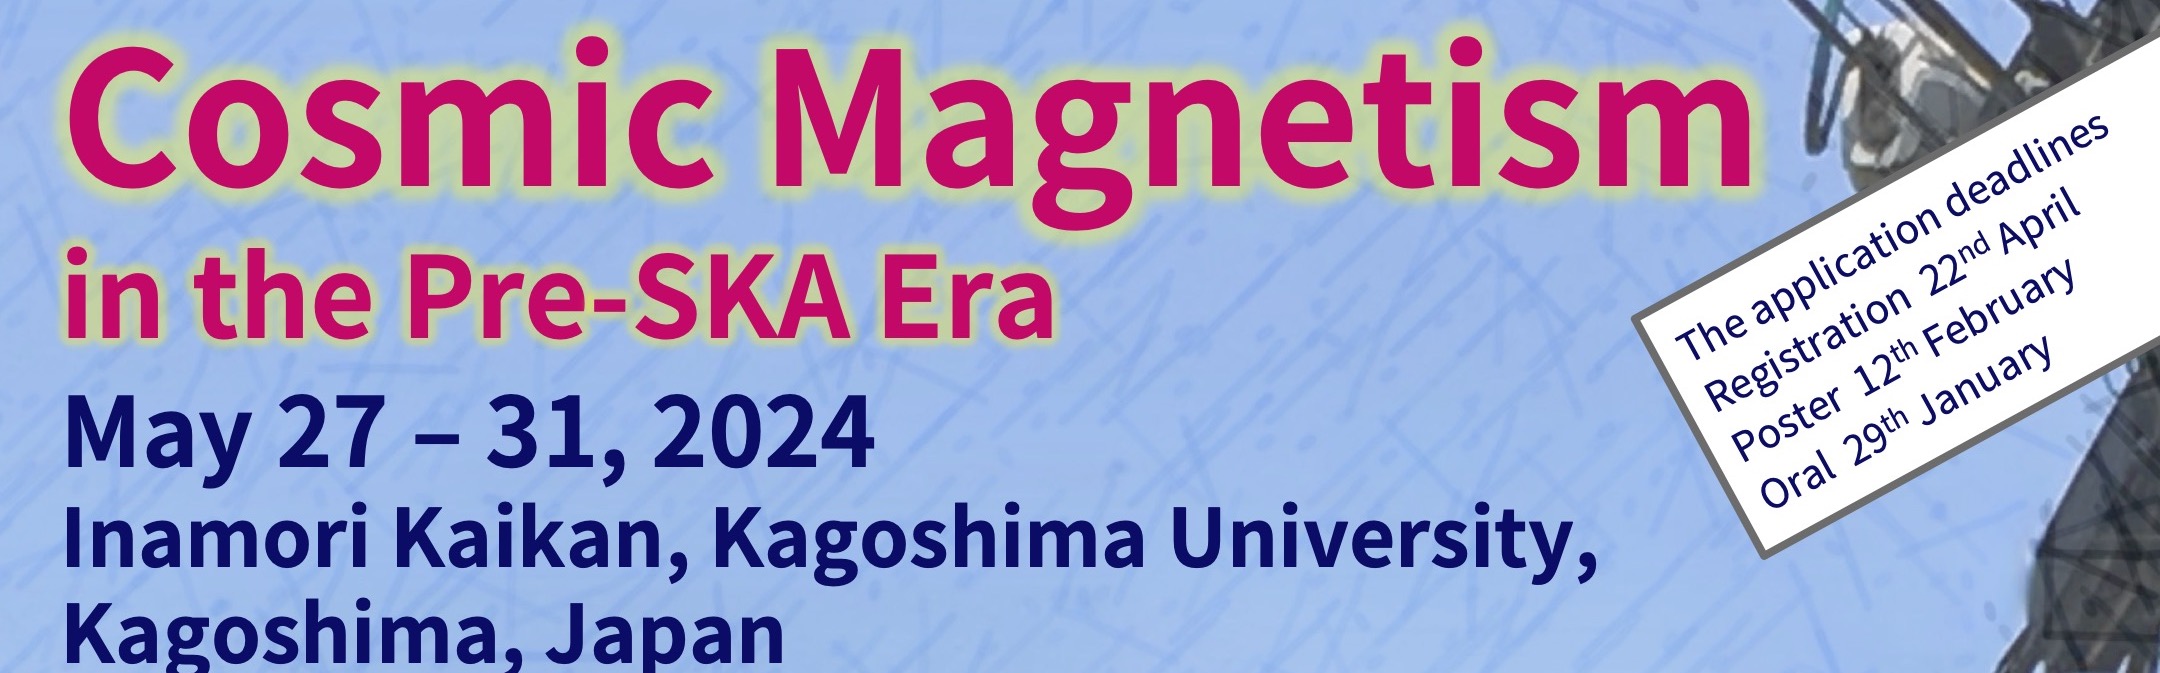 Cosmic Magnetism in the Pre-SKA Era